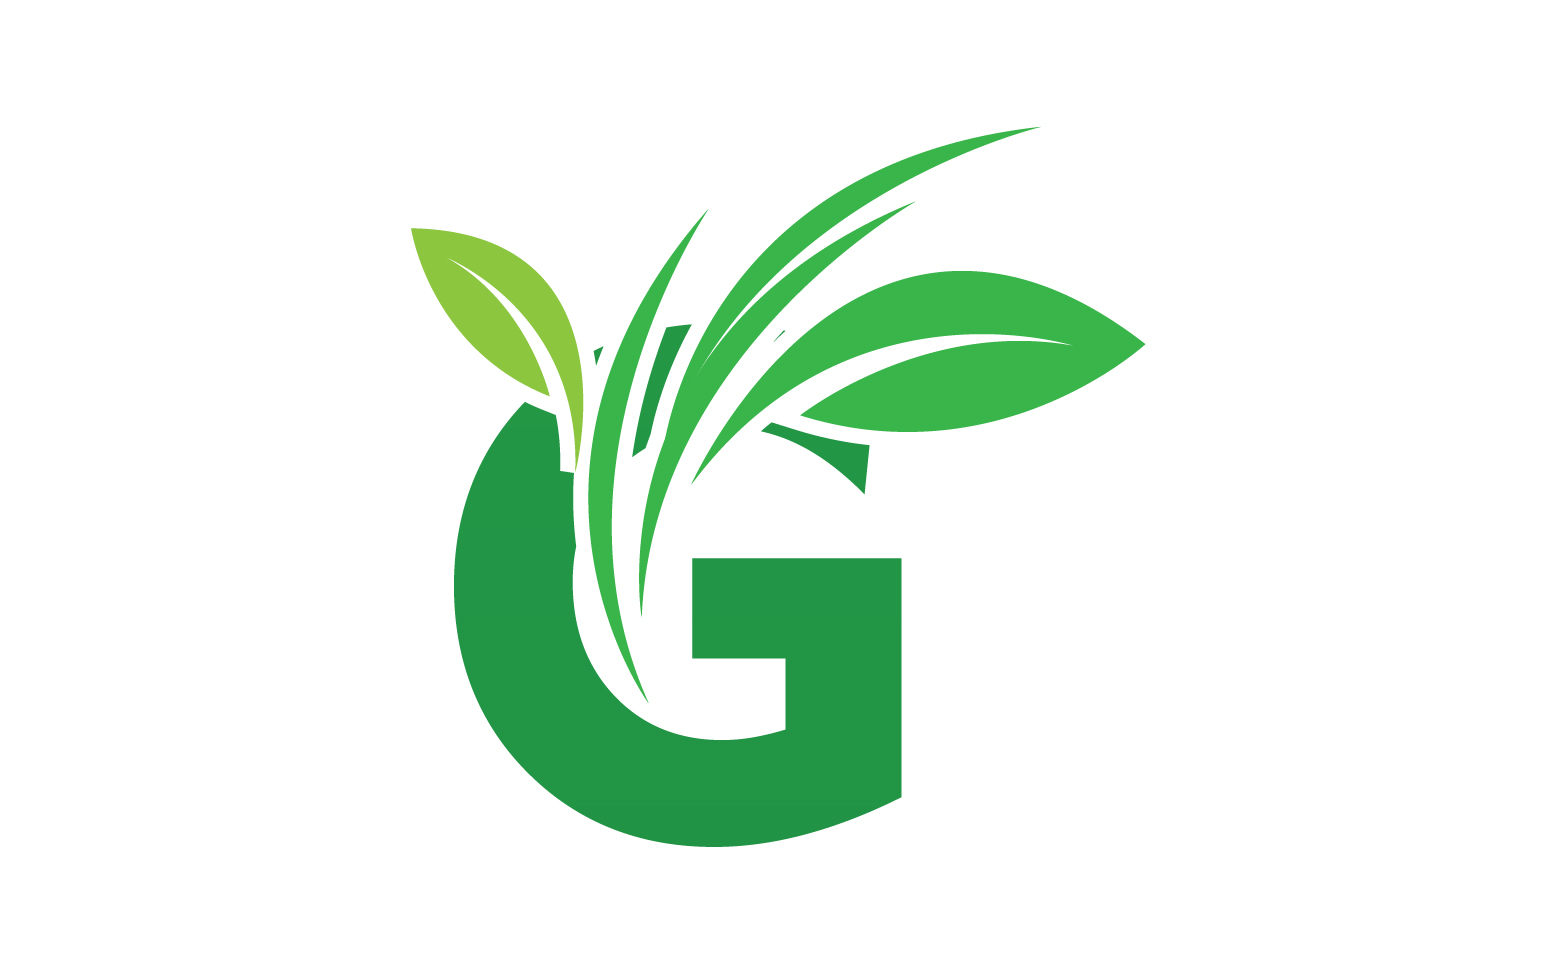 G letter leaf green logo icon version v33